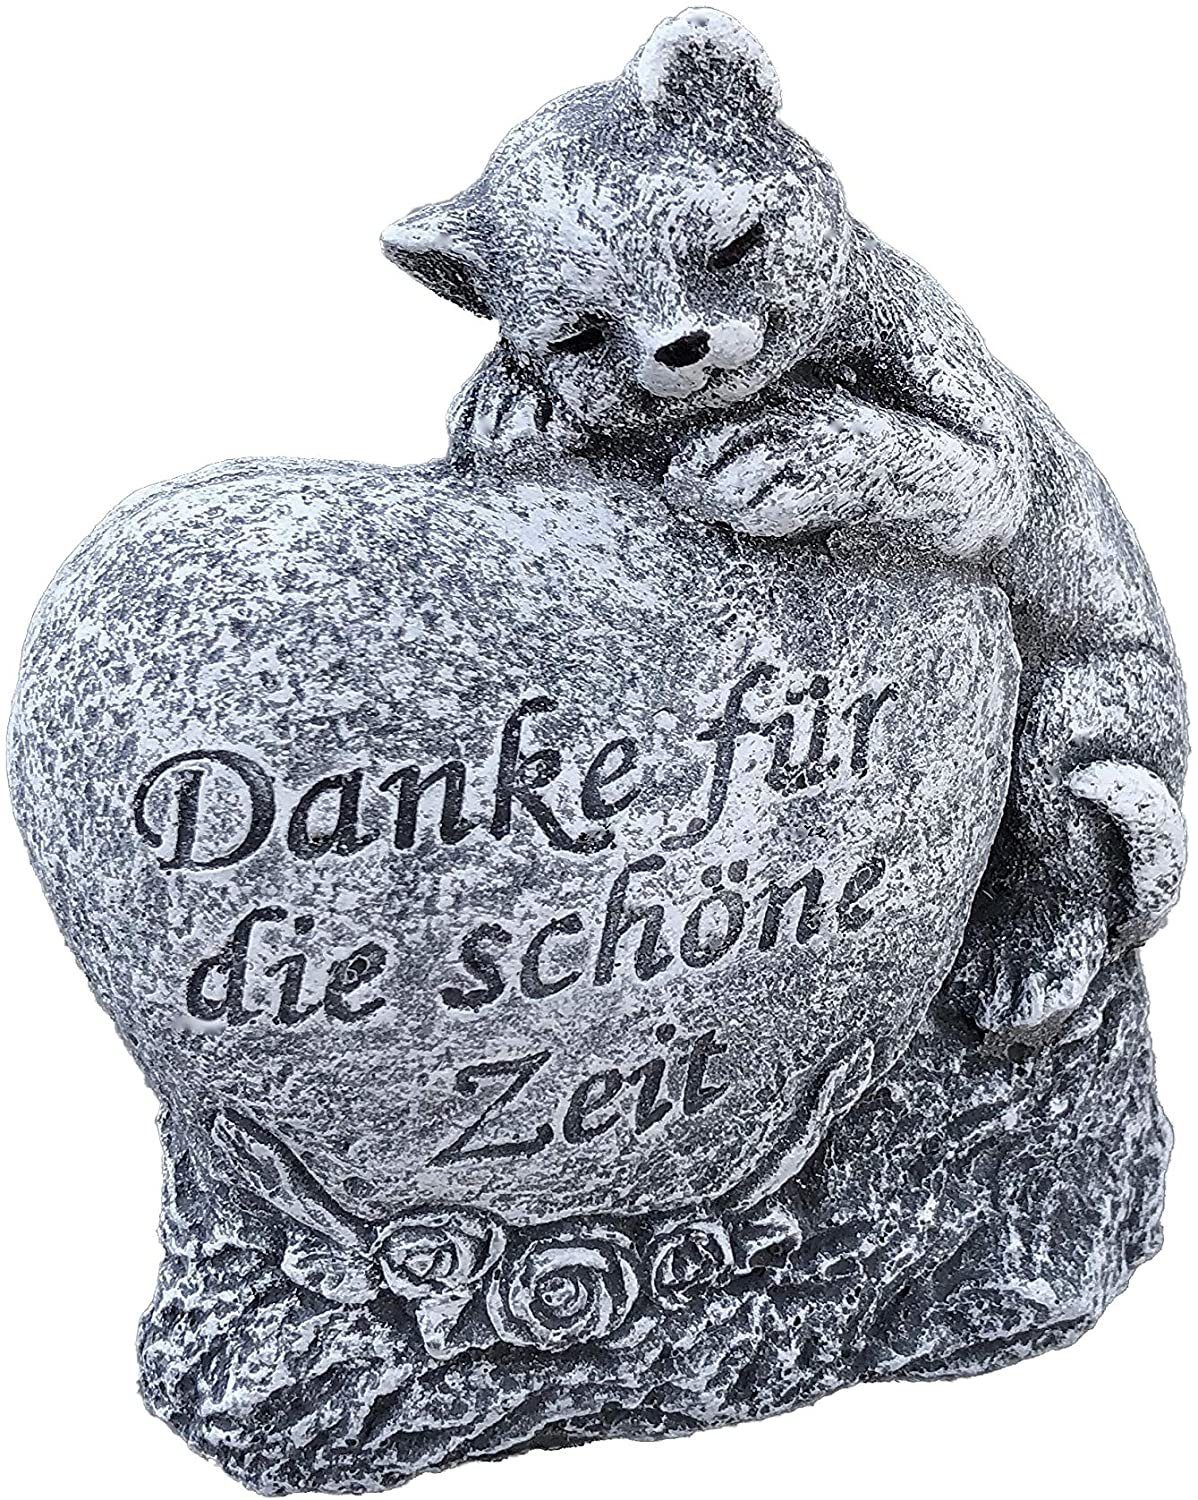 Stone schöne Katze " and für Gartenfigur Steinfigur Zeit Grabschmuck Danke Style " die